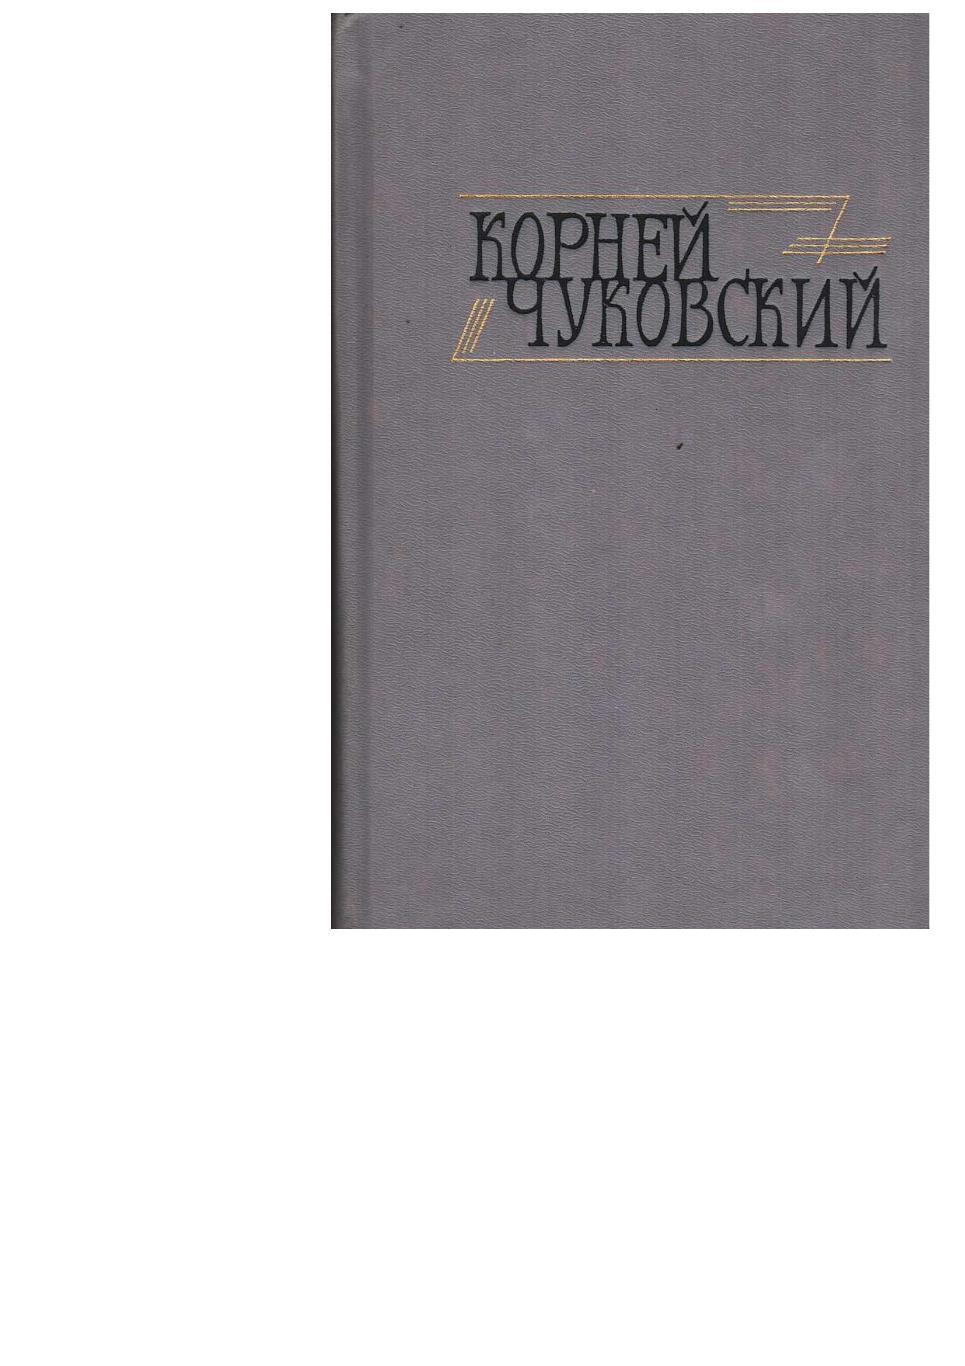 Чуковский К.И. Сочинения в двух томах. Т. 2. – М., 1990.